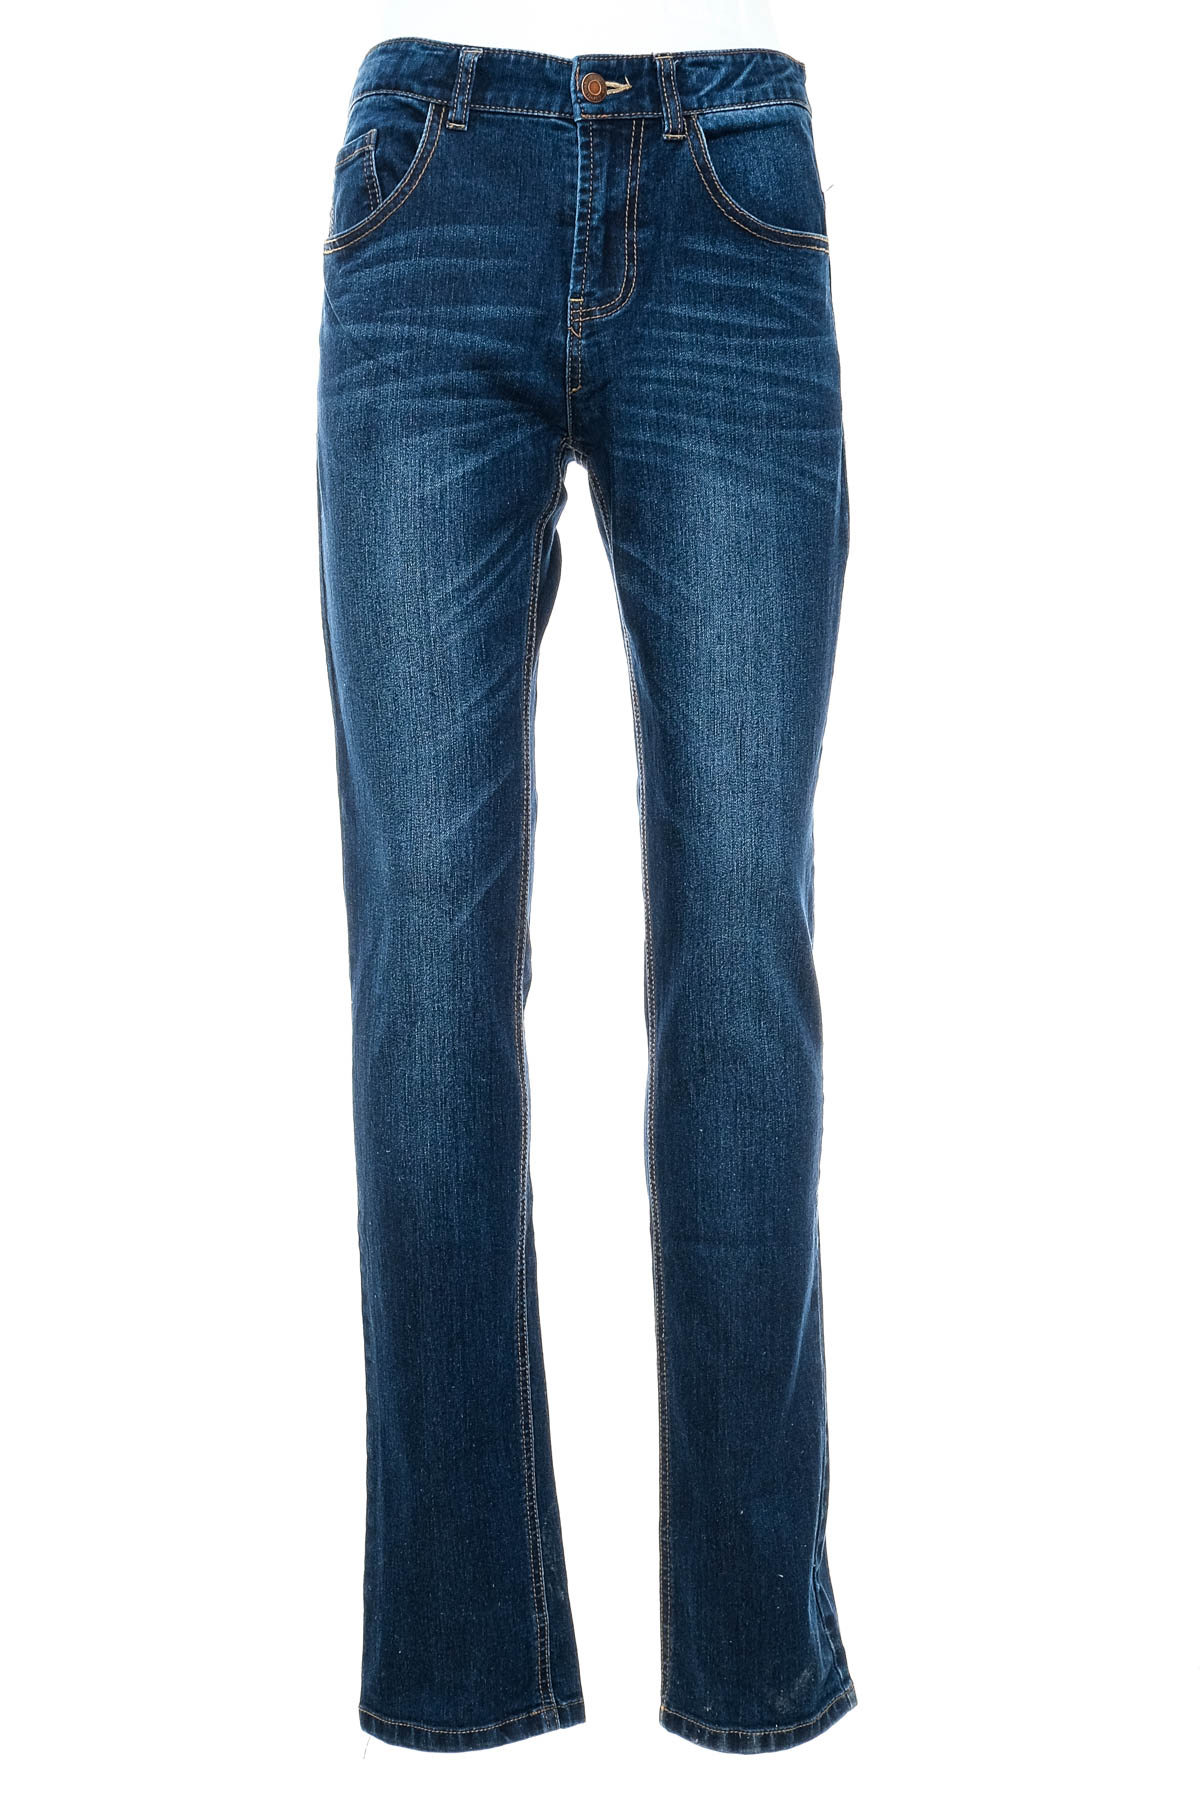 Jeans pentru băiat - ESPRIT - 0